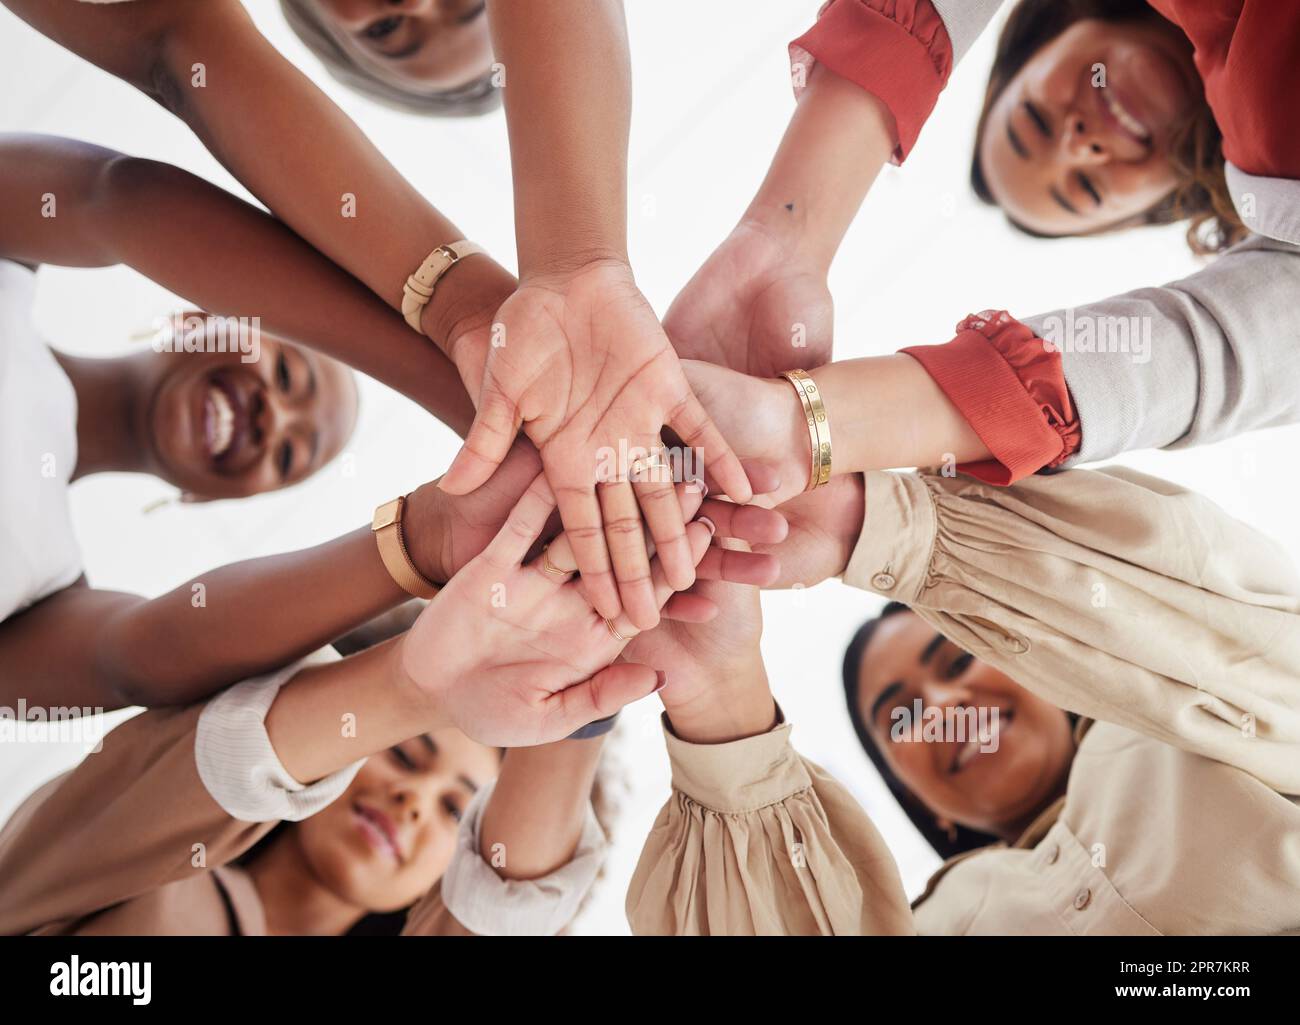 Kleine, vielfältige Gruppe ehrgeiziger, lächelnder Geschäftsfrauen, zusammengedrängt mit Händen in der Mitte. Lächeln, ethnisches Team aus professionellen Kollegen, die sich motiviert, vereint, unterstützt und bereit fühlen Stockfoto